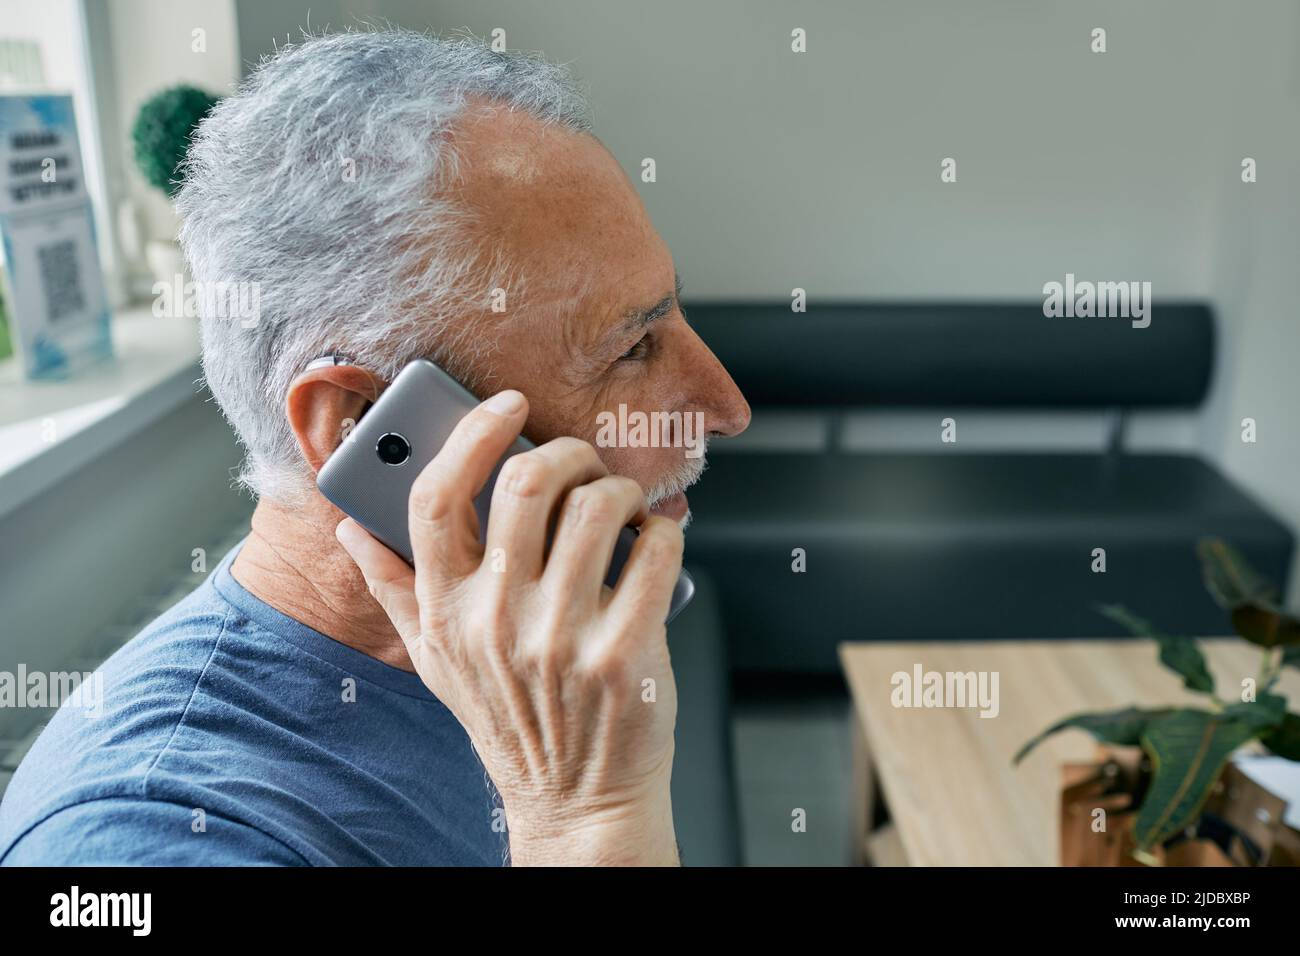 Utilisation de vos prothèses auditives avec un smartphone . L'homme âgé ayant une prothèse auditive derrière l'oreille a une vie entière et peut entendre son interlocuteur au téléphone Banque D'Images